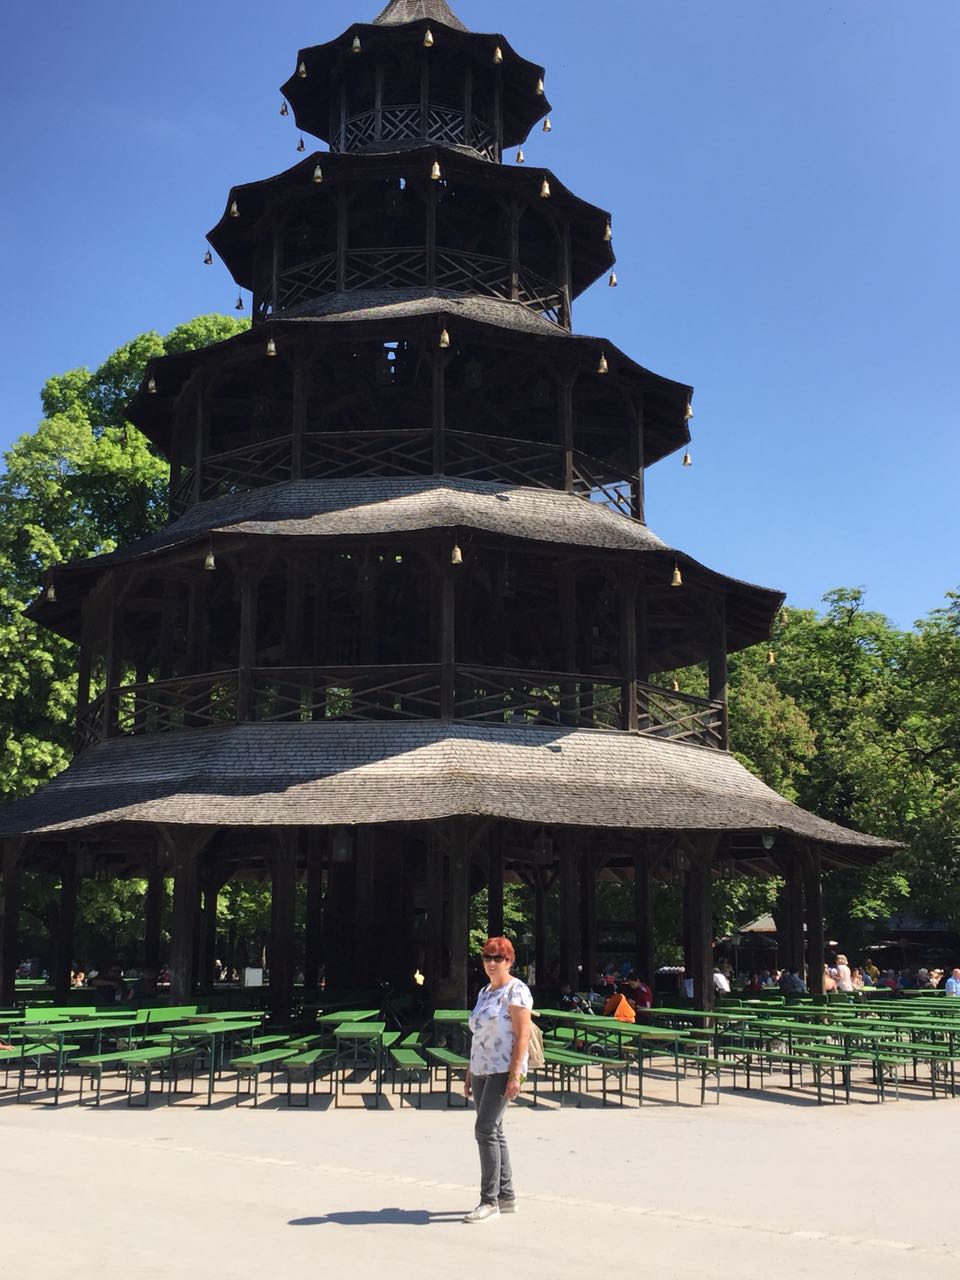 Der über 200 Jahre alte Chinesische Turm im Englischen Garten in München.